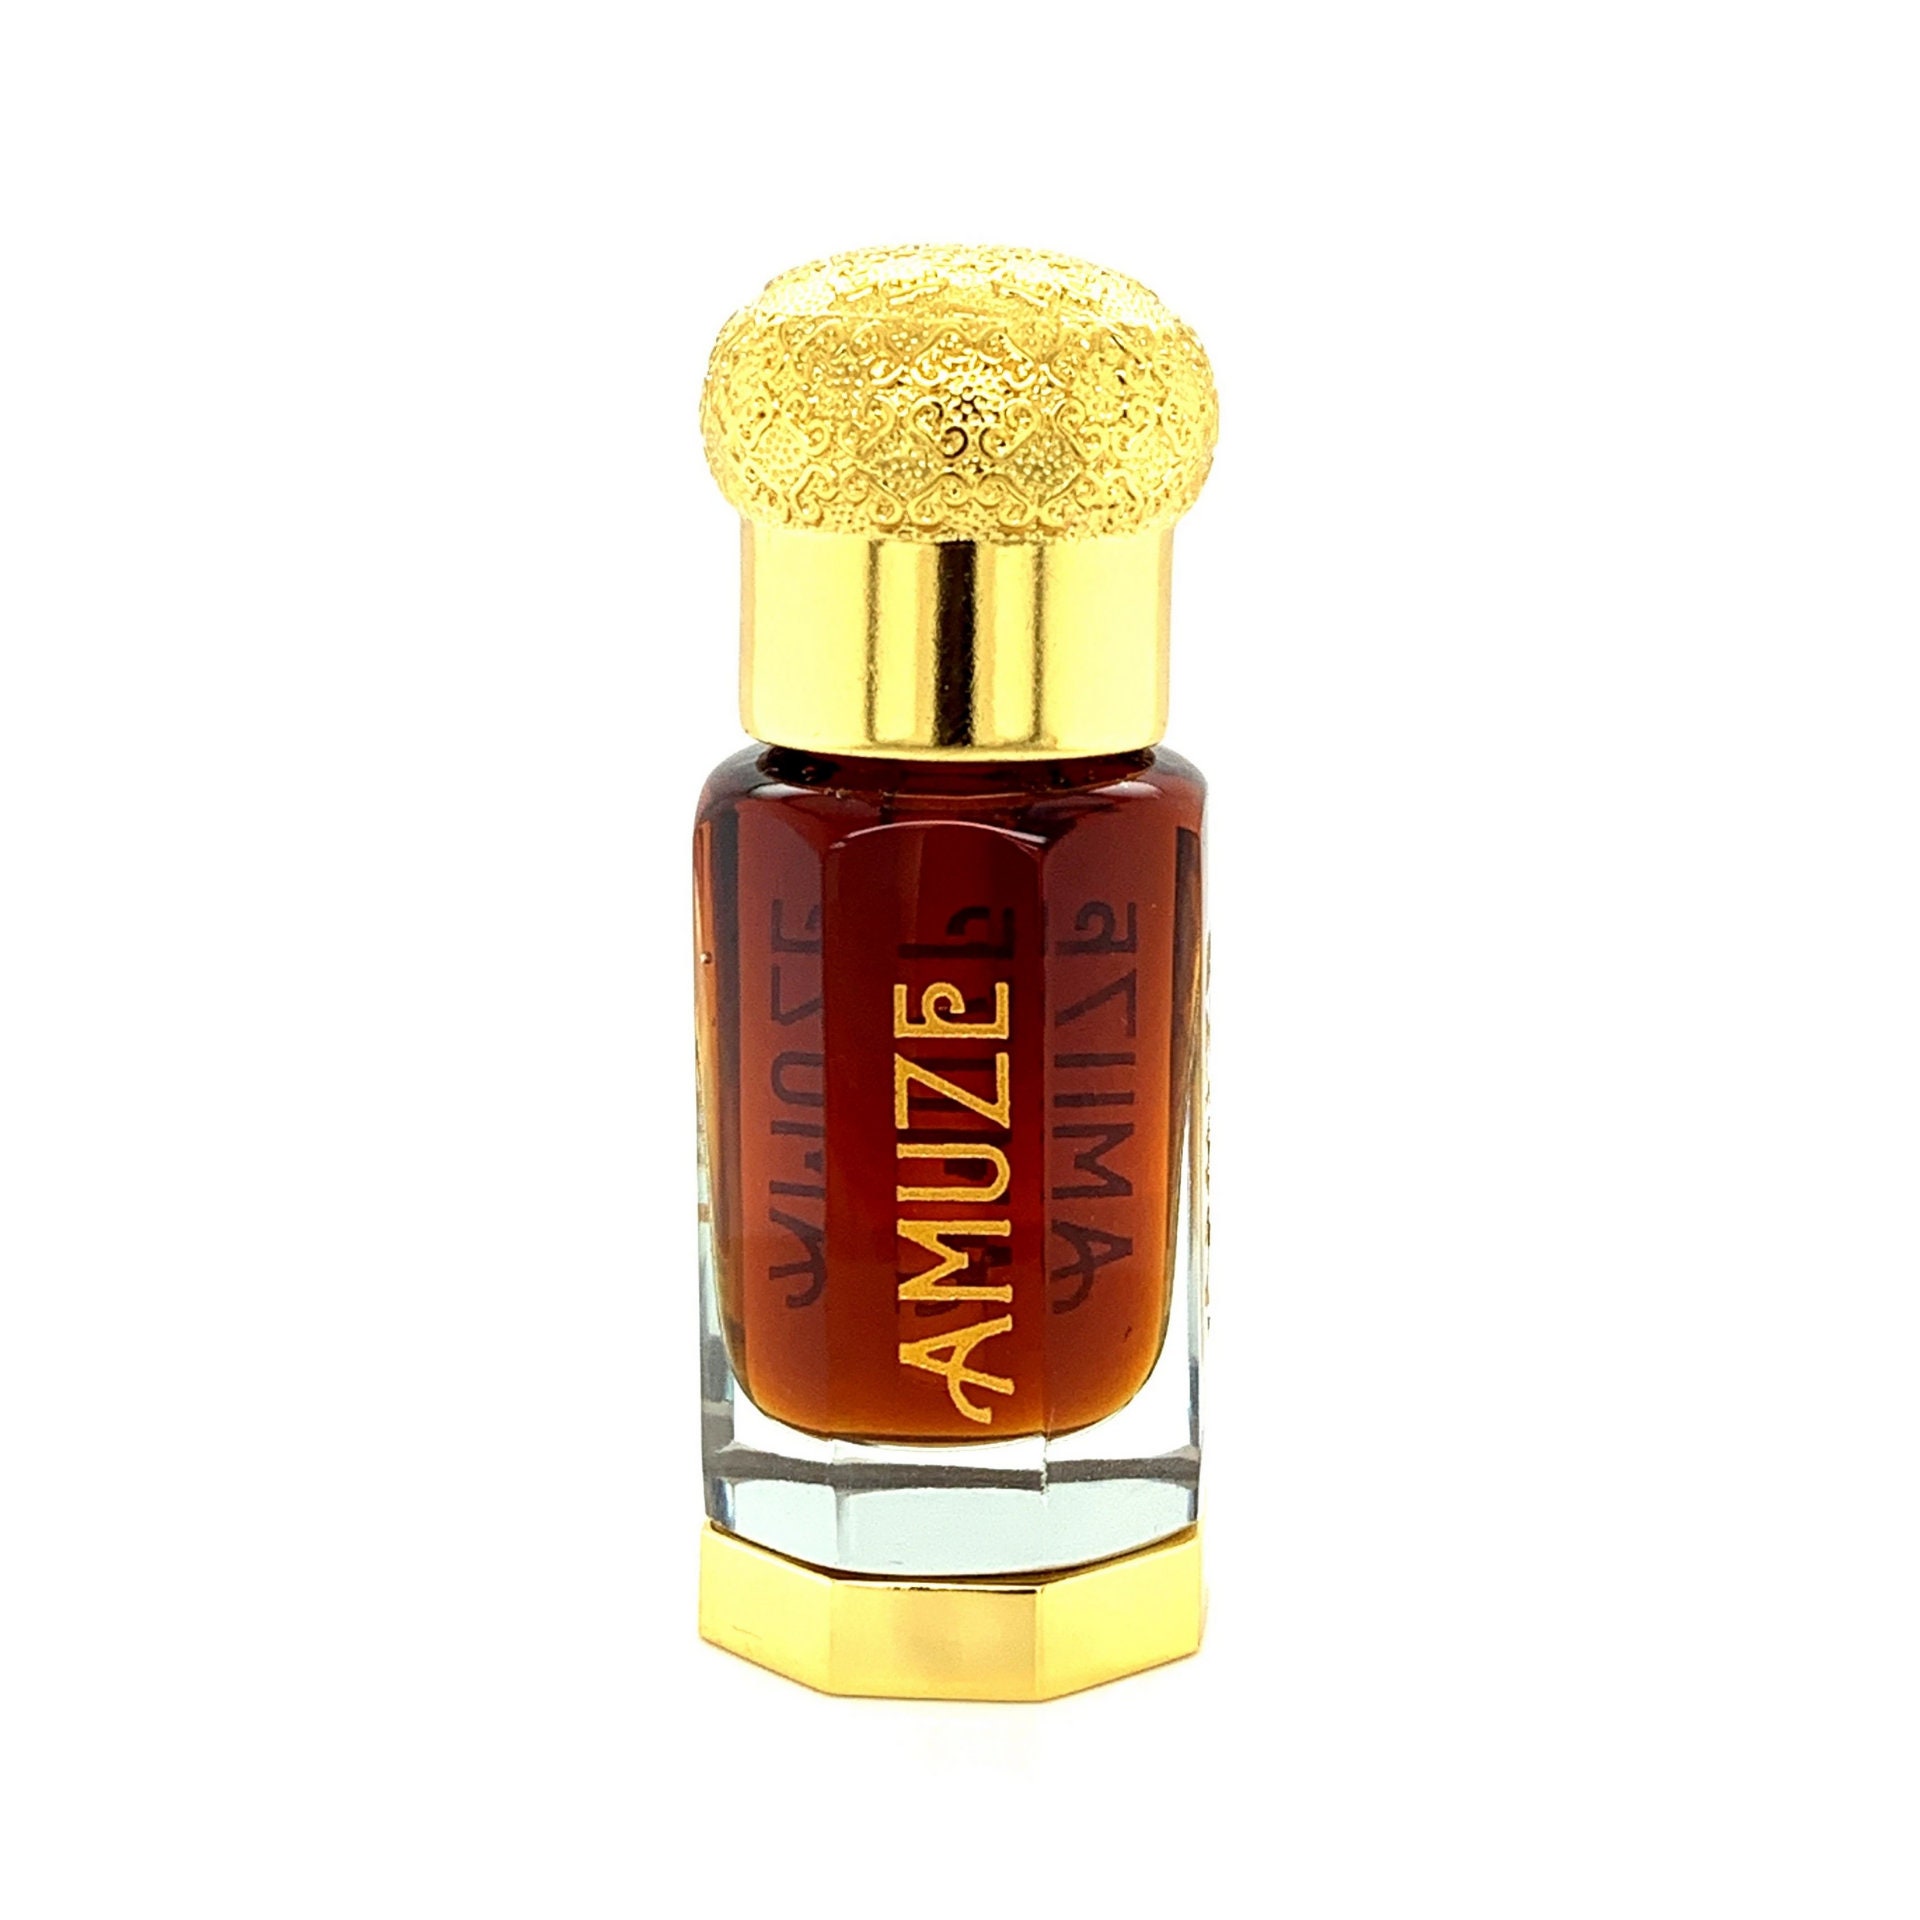 Frankincense & Myrrh Premium Fragrance Oil, 1 fl oz (30ML) Dropper Bottle